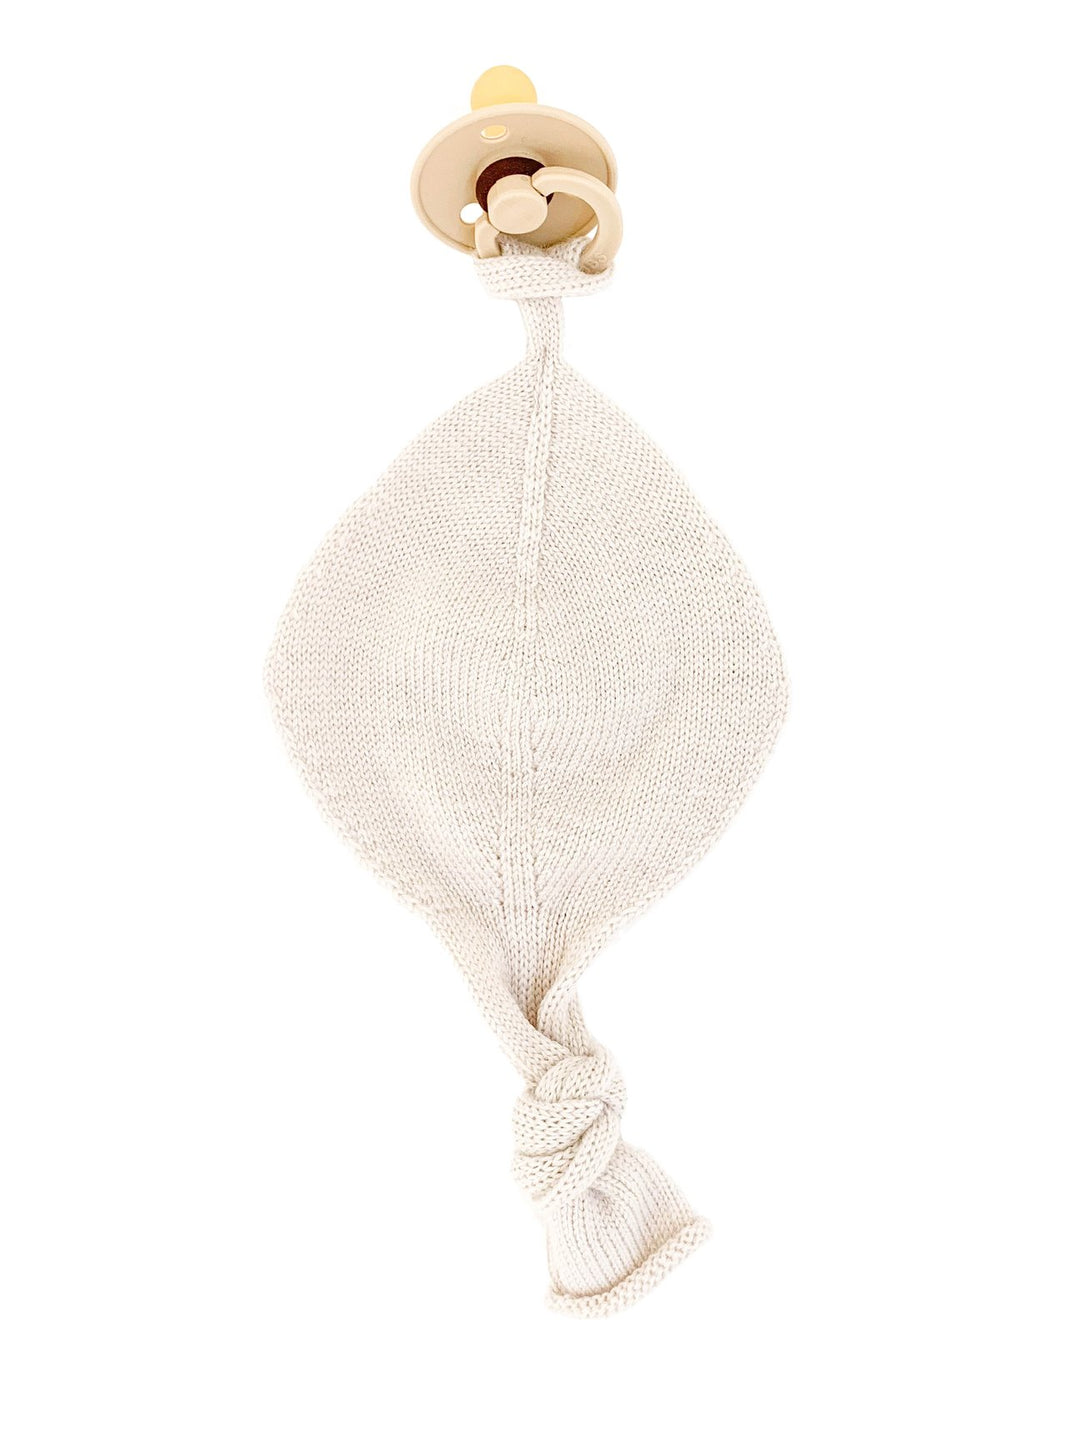 HVID knitwear Off-white beige Hvid merino wool dummy pacifier comforter chain accessory BIBs 